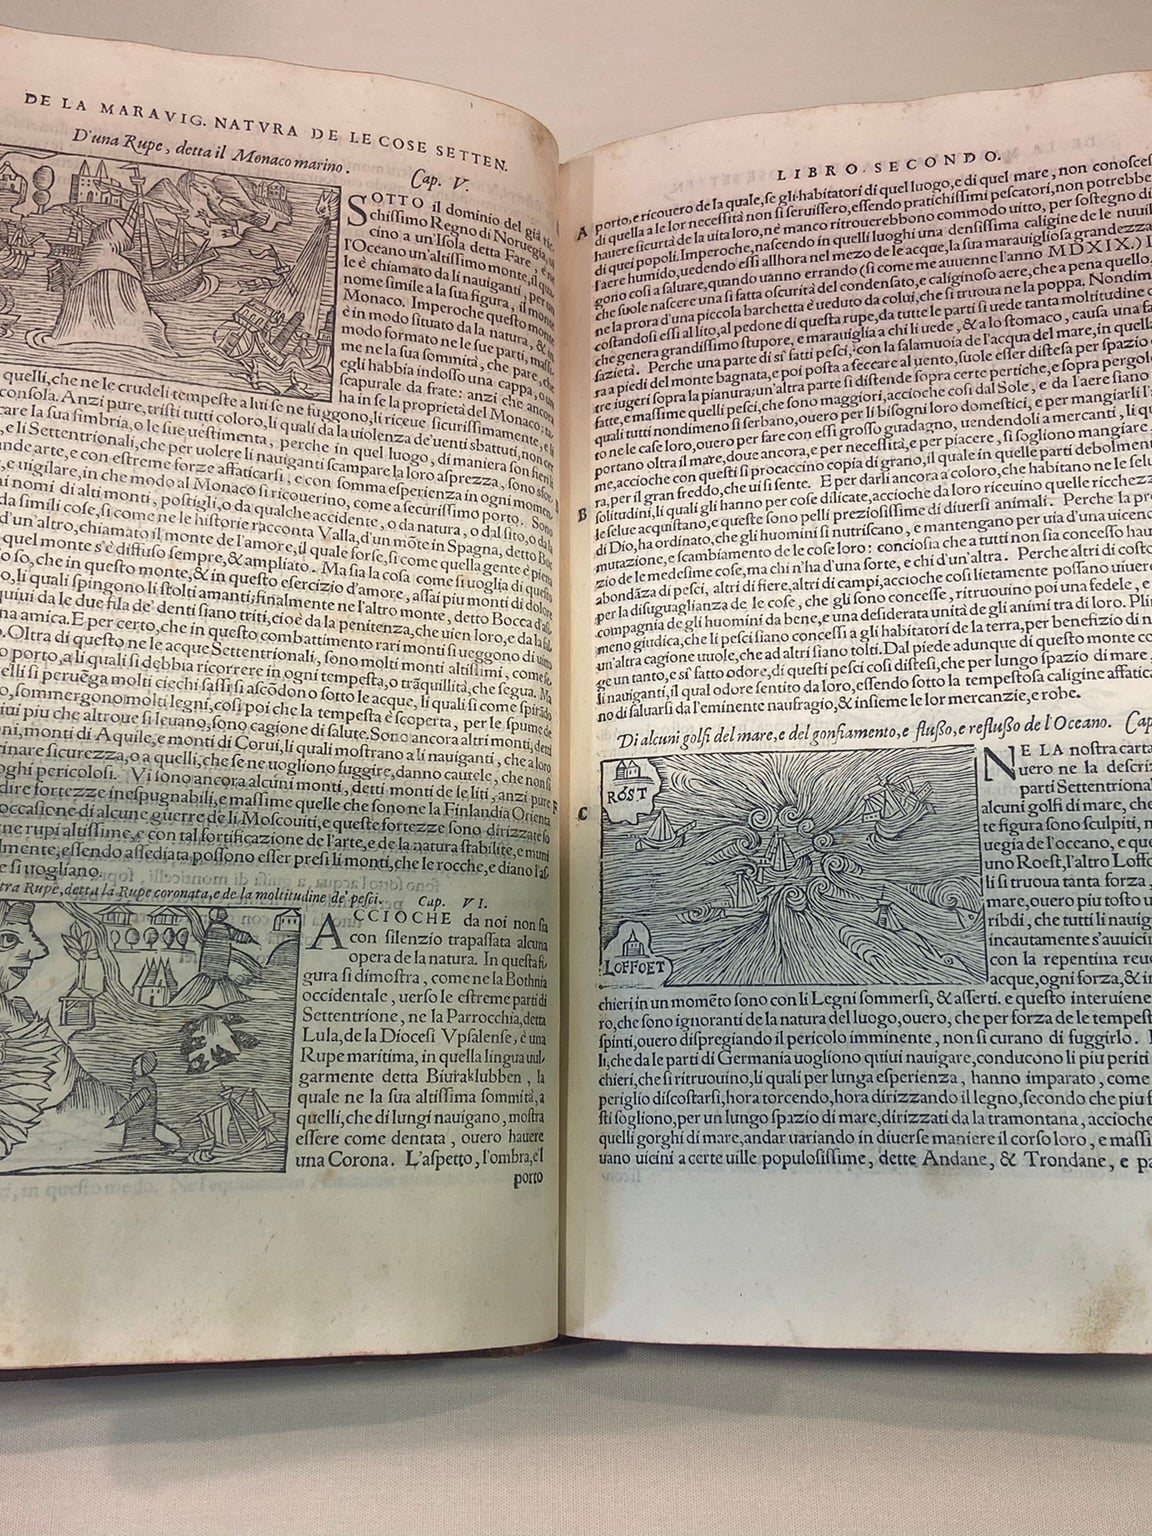 Photo of book by Olaus Magnus, Historia delle genti et della natvra delle cose settentrionale